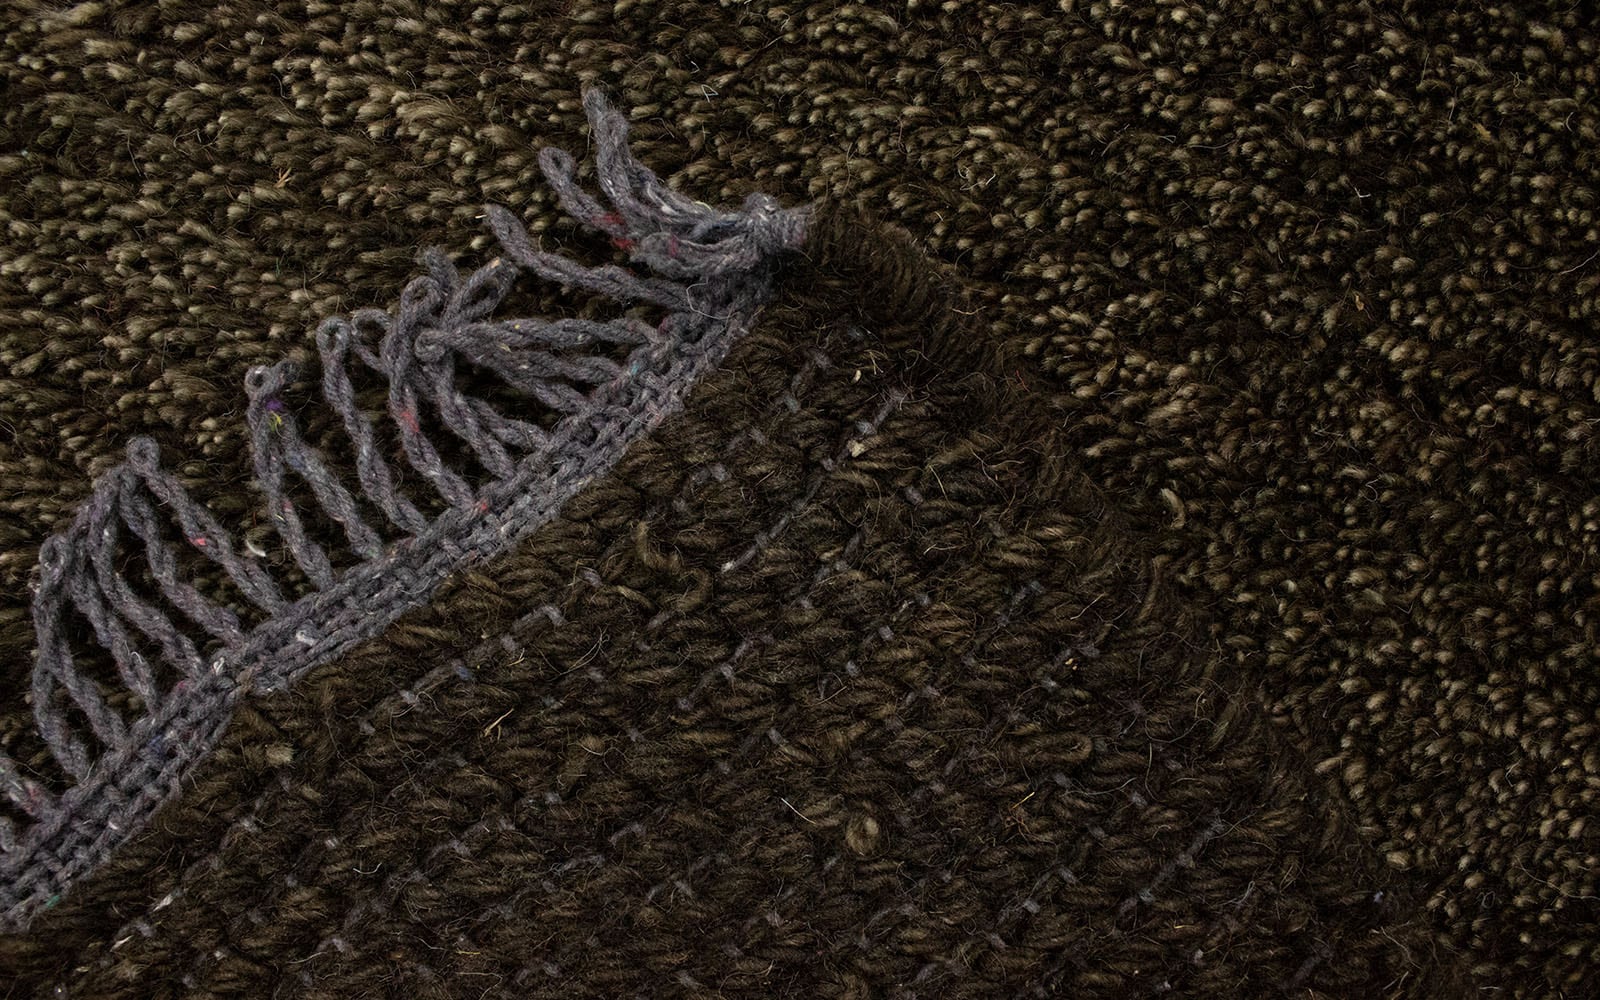 morgenland Wollteppich »Nepal Teppich handgeknüpft mehrfarbig«, rechteckig, handgeknüpft